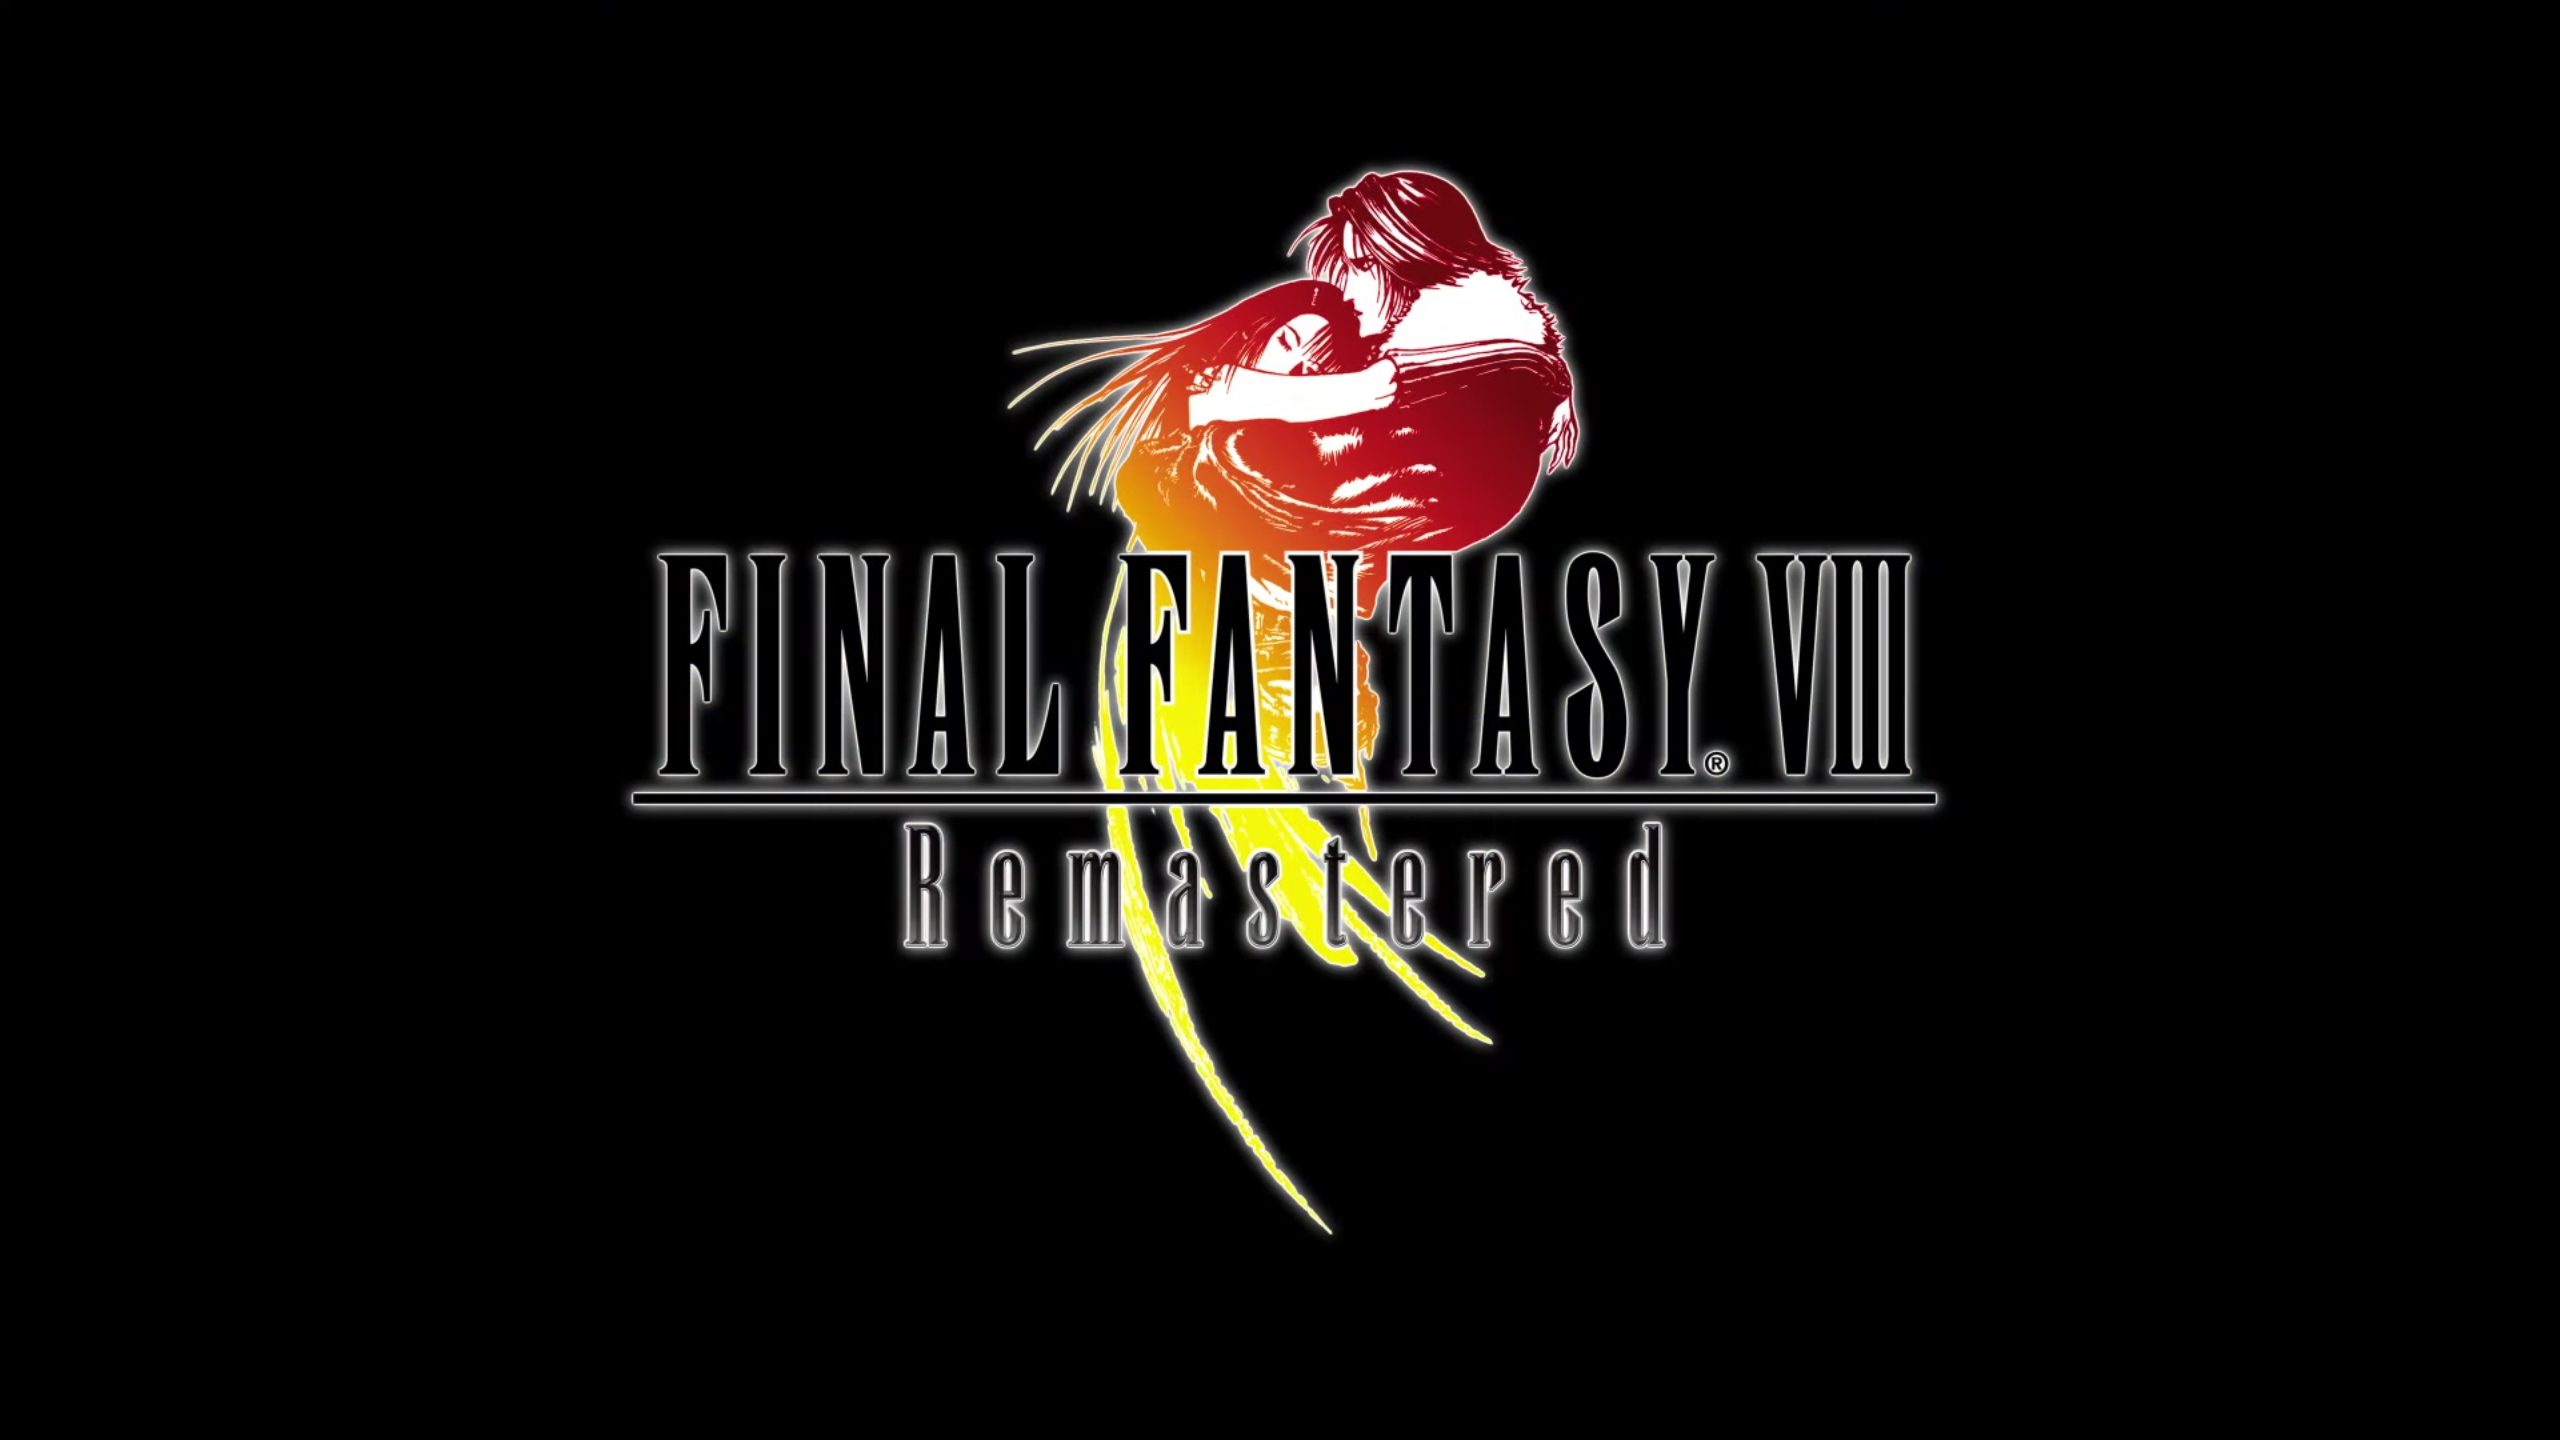 FINAL FANTASY VIII Remastered erscheint am 3. September auf PC und Konsolen - Neuer Gameplay-Trailer